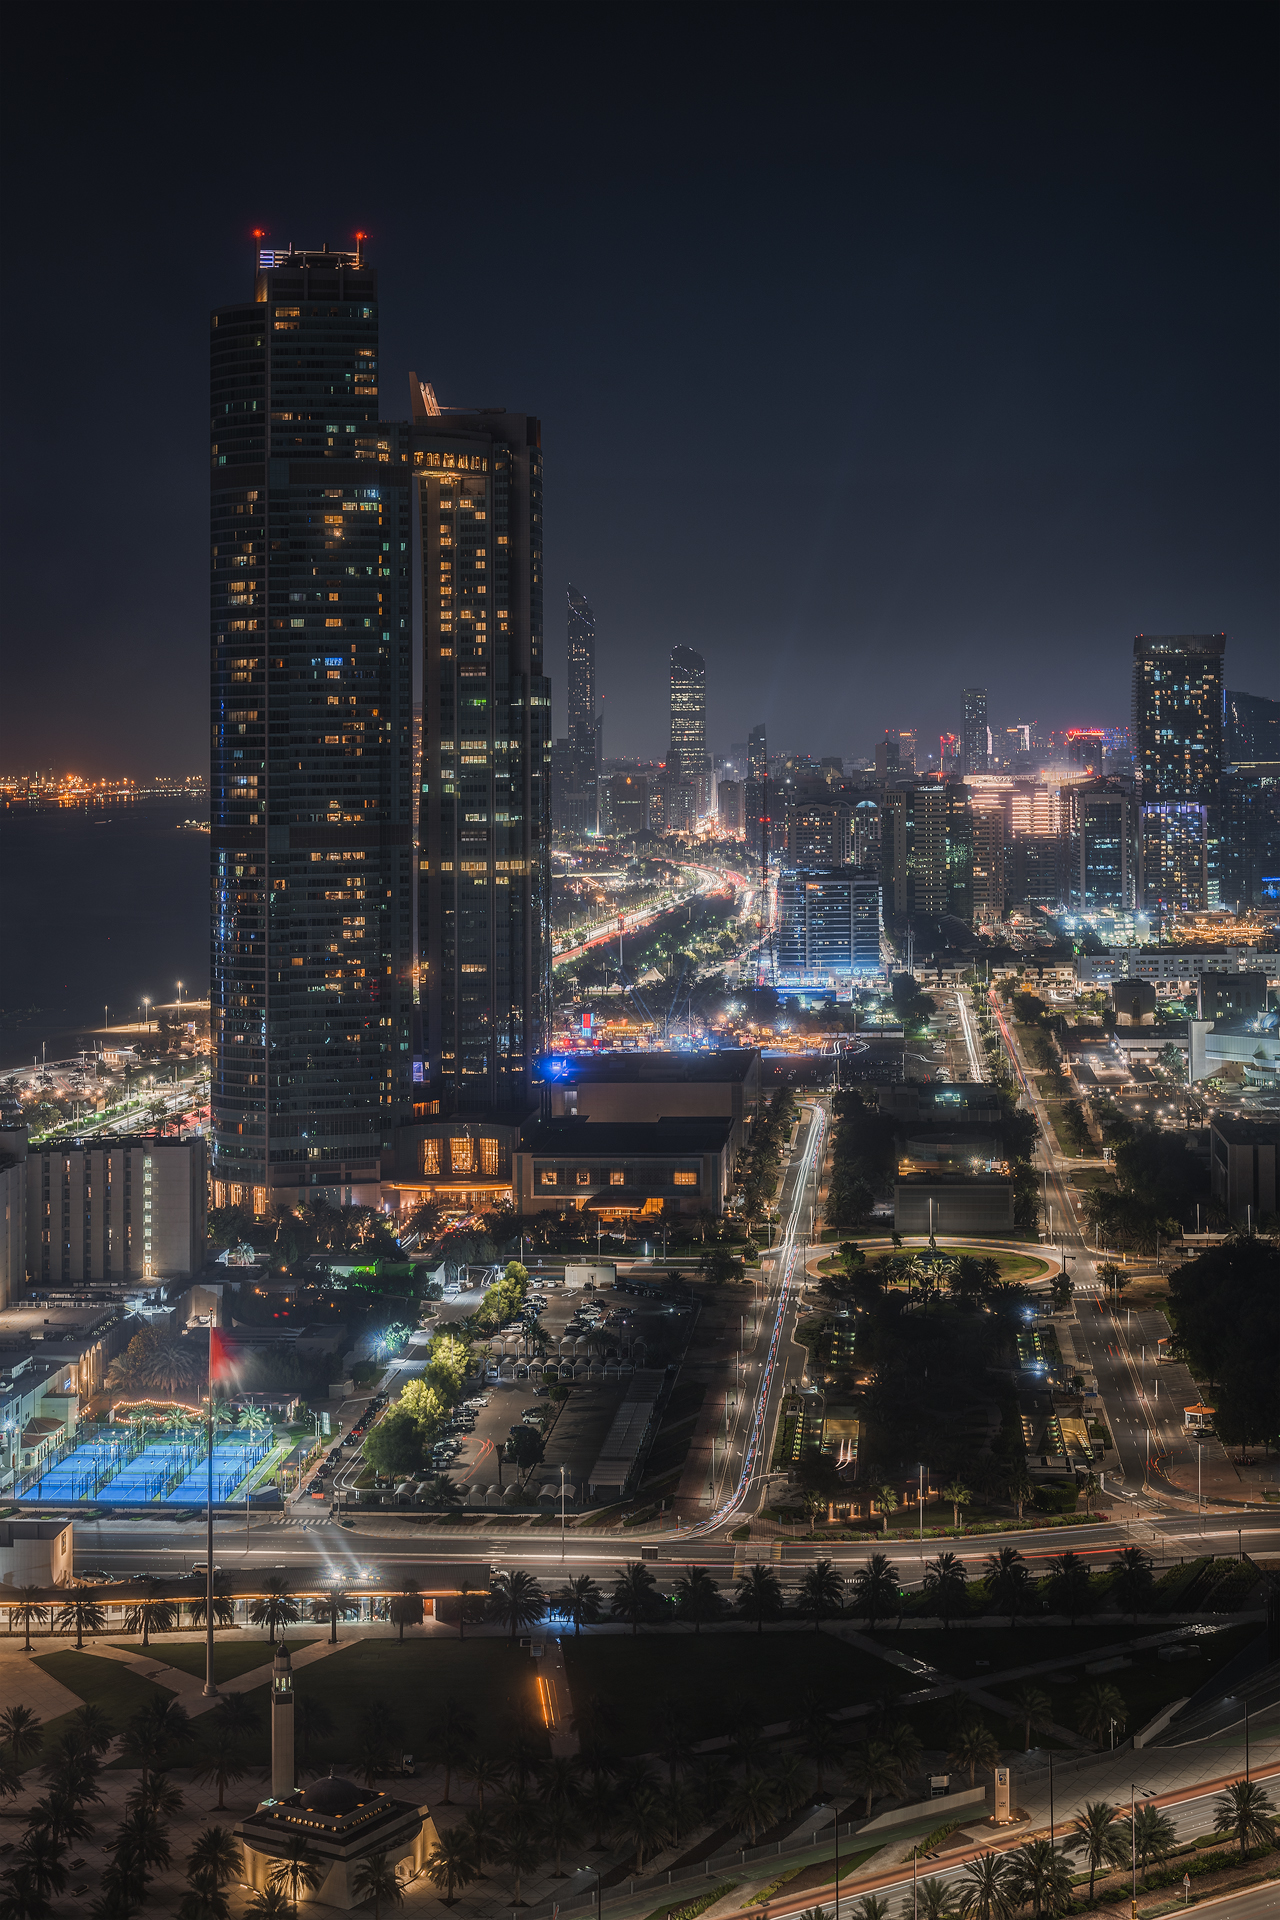 Abu Dhabi by night...